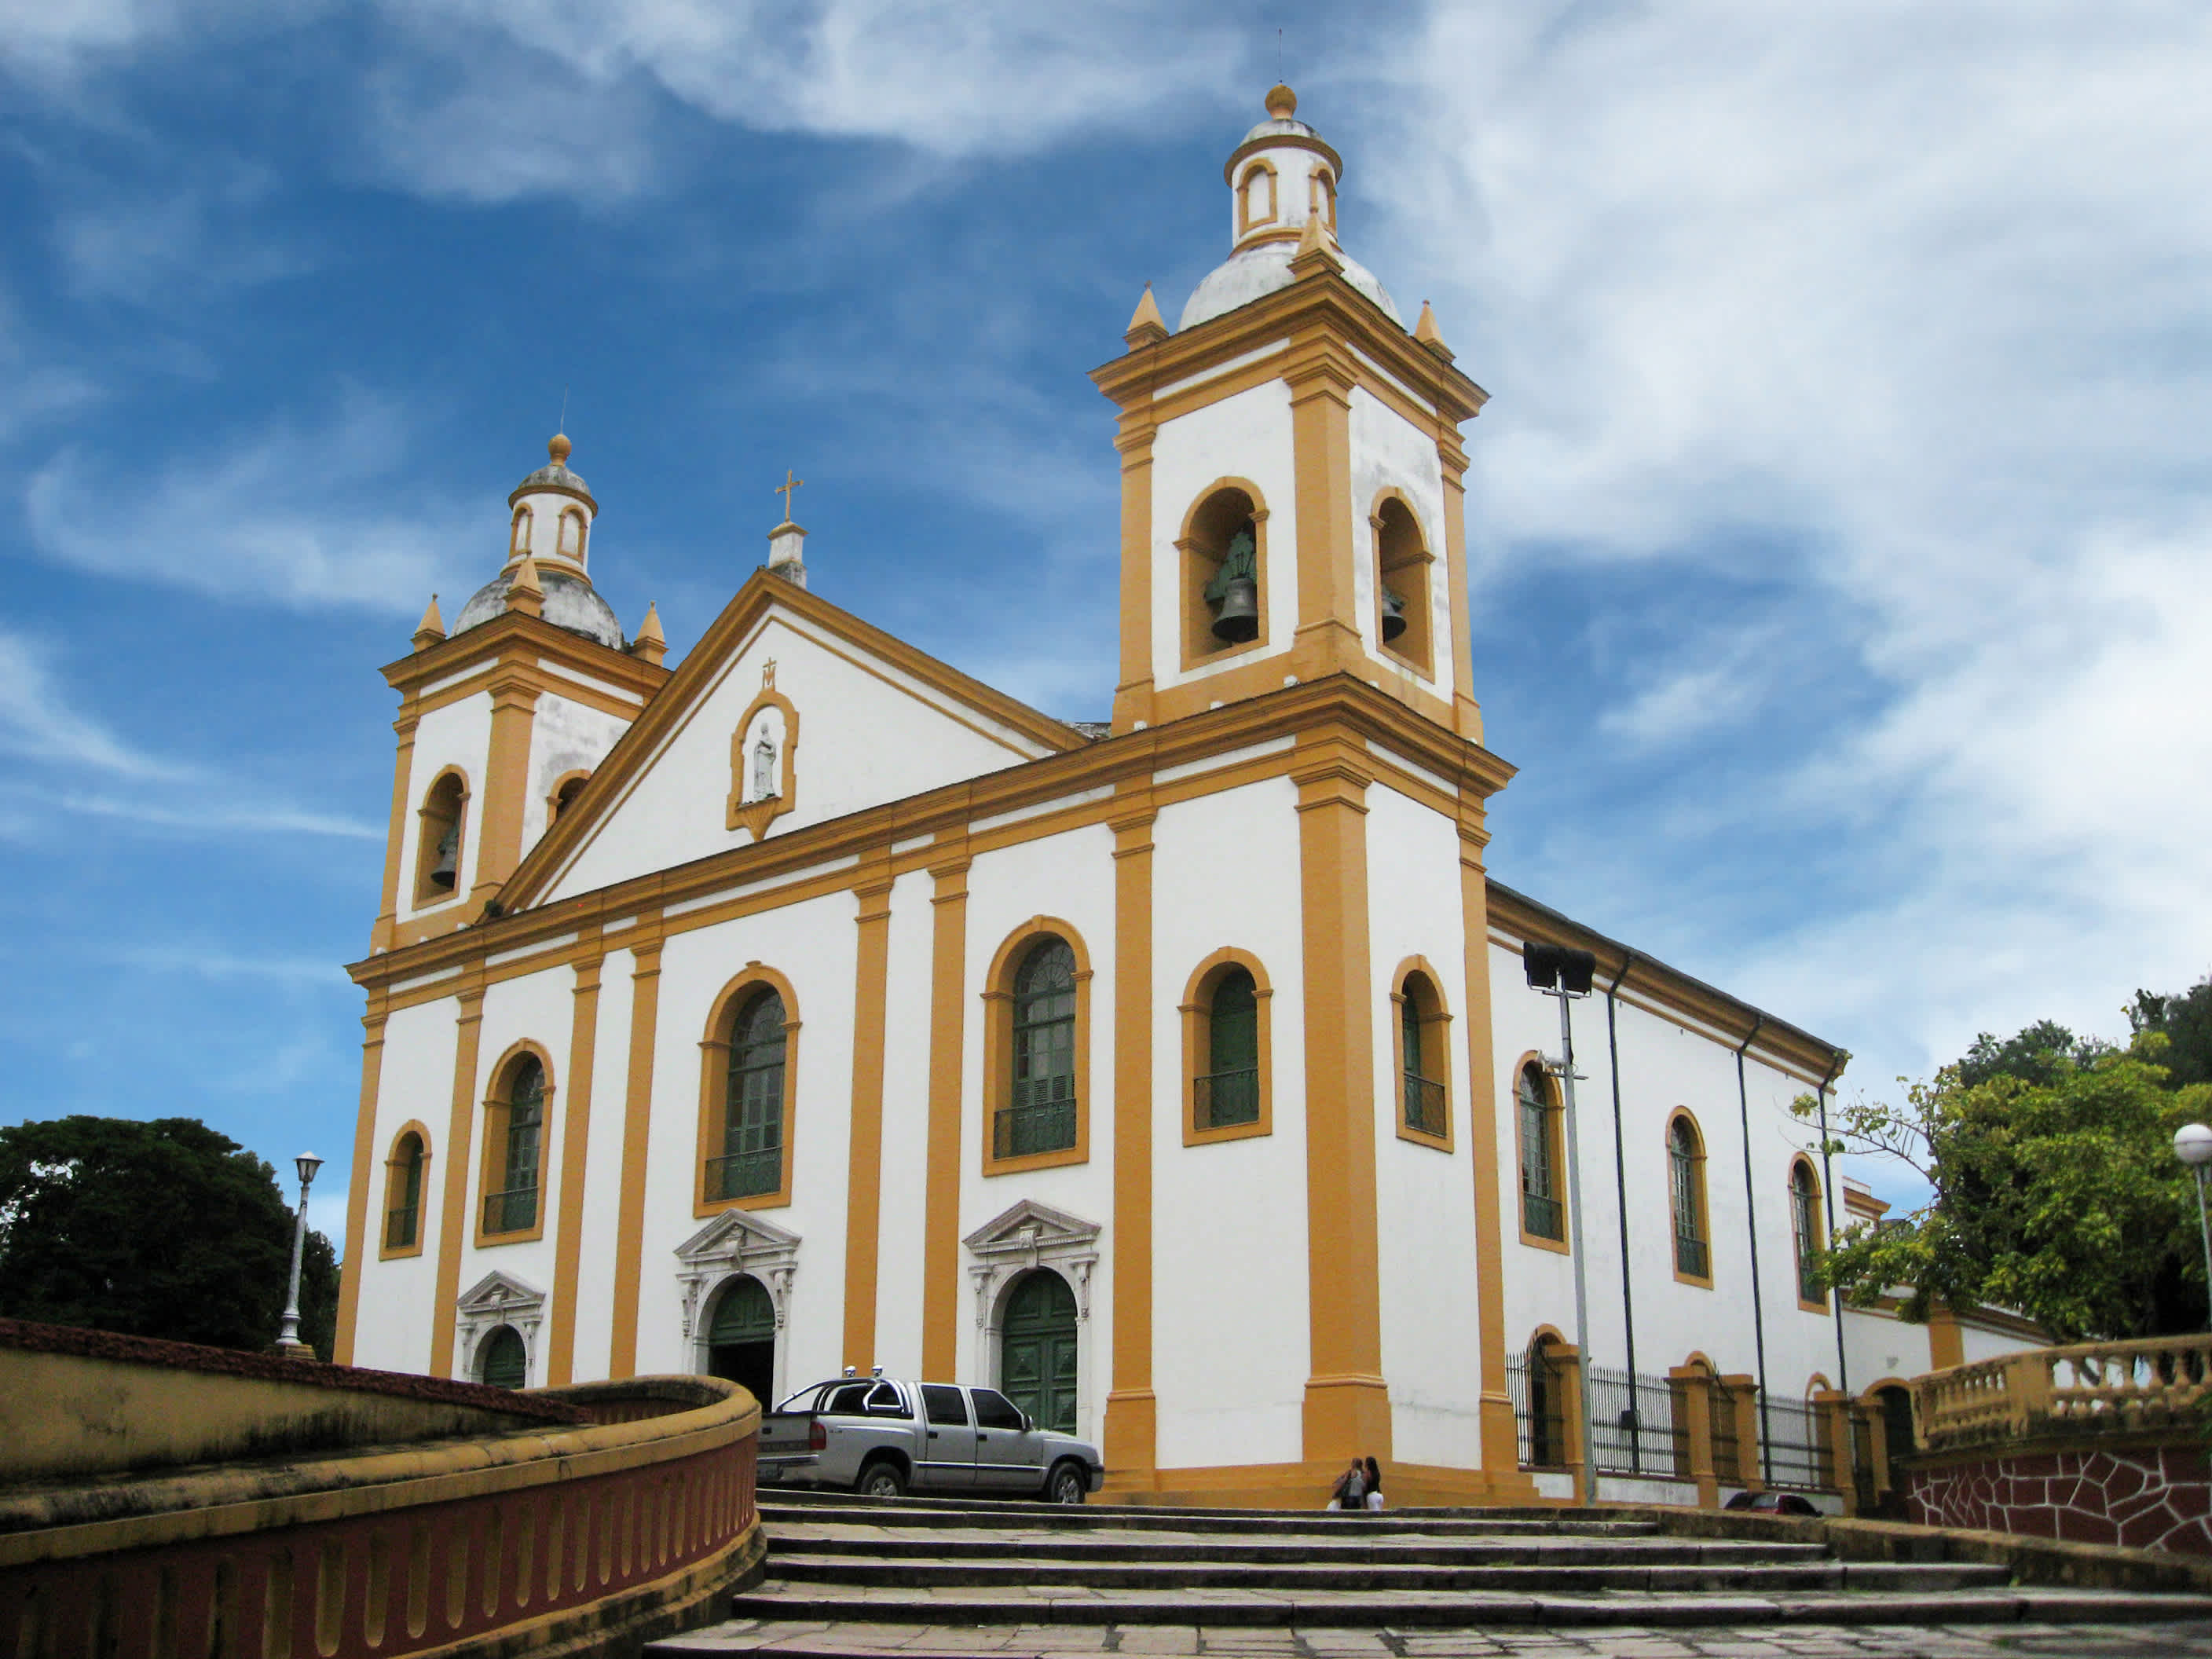 Die Kathedrale von Manaus befindet sich am Osvaldo-Cruz-Platz und wurde im 19. Jahrhundert erbaut und ist im klassischen römischen Stil gestaltet.